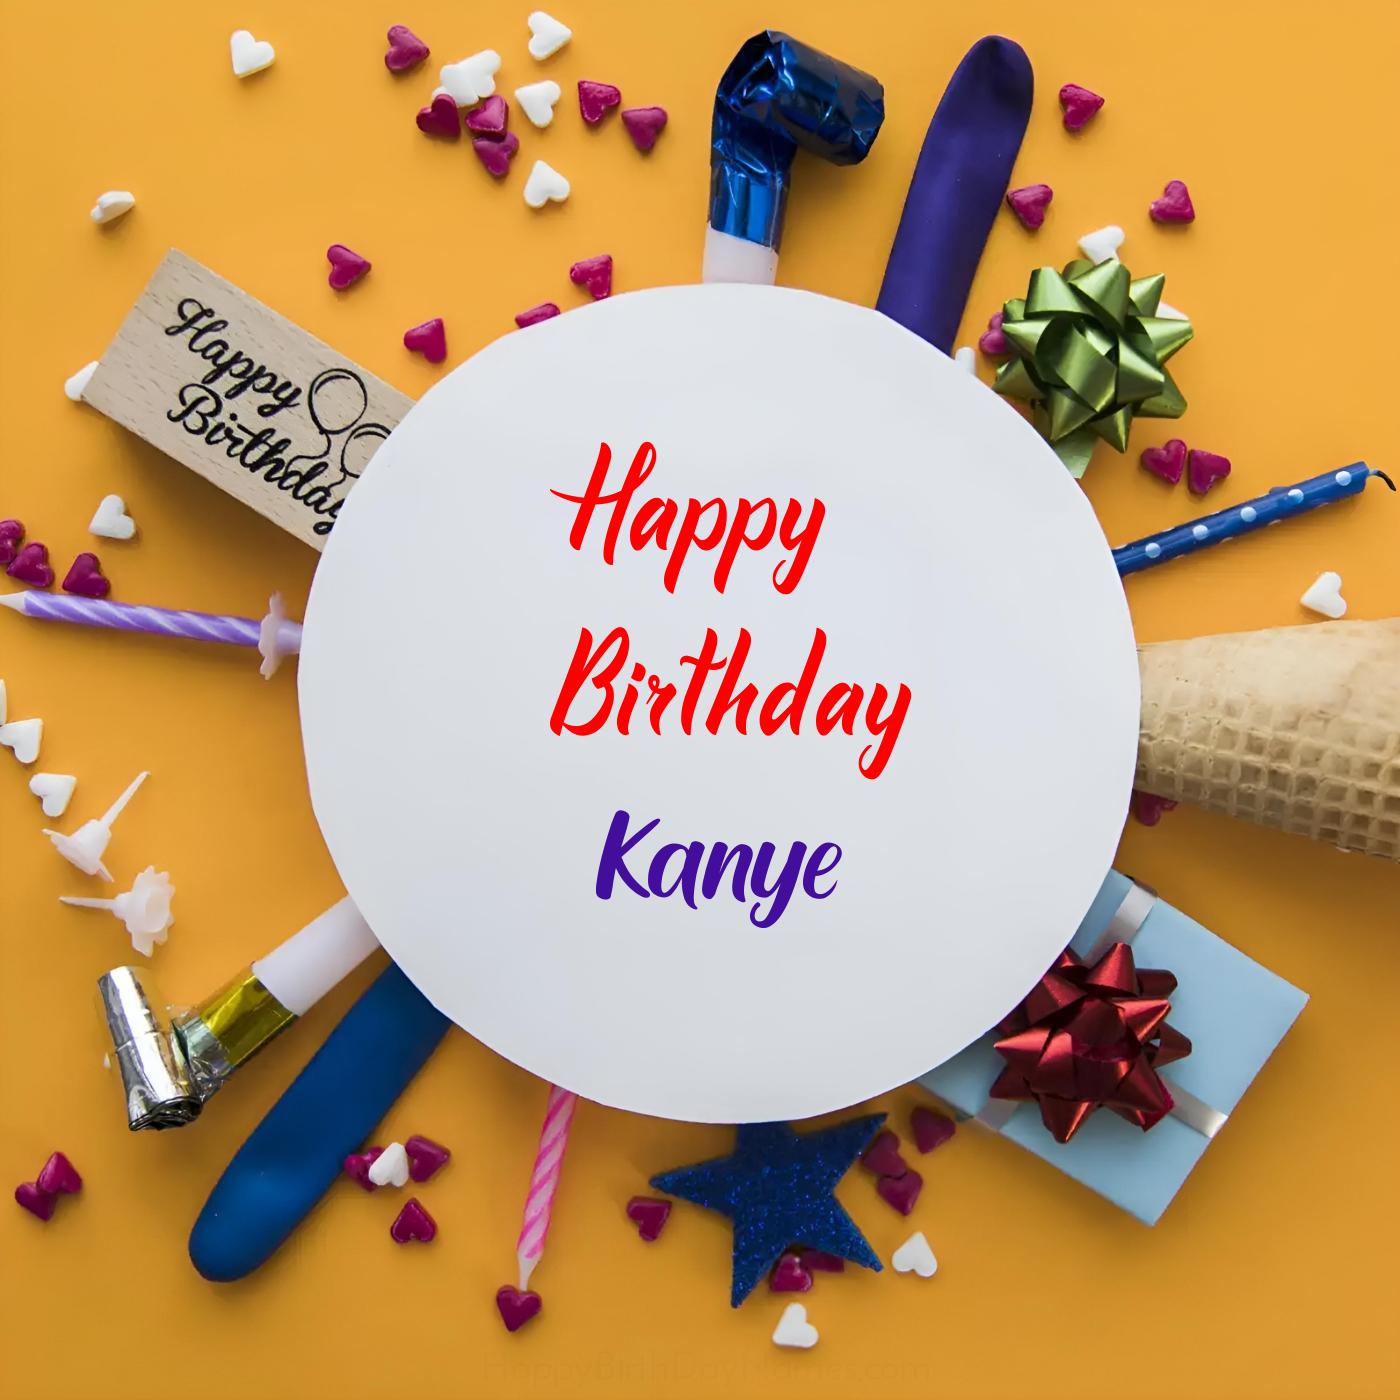 Happy Birthday Kanye Round Frame Card